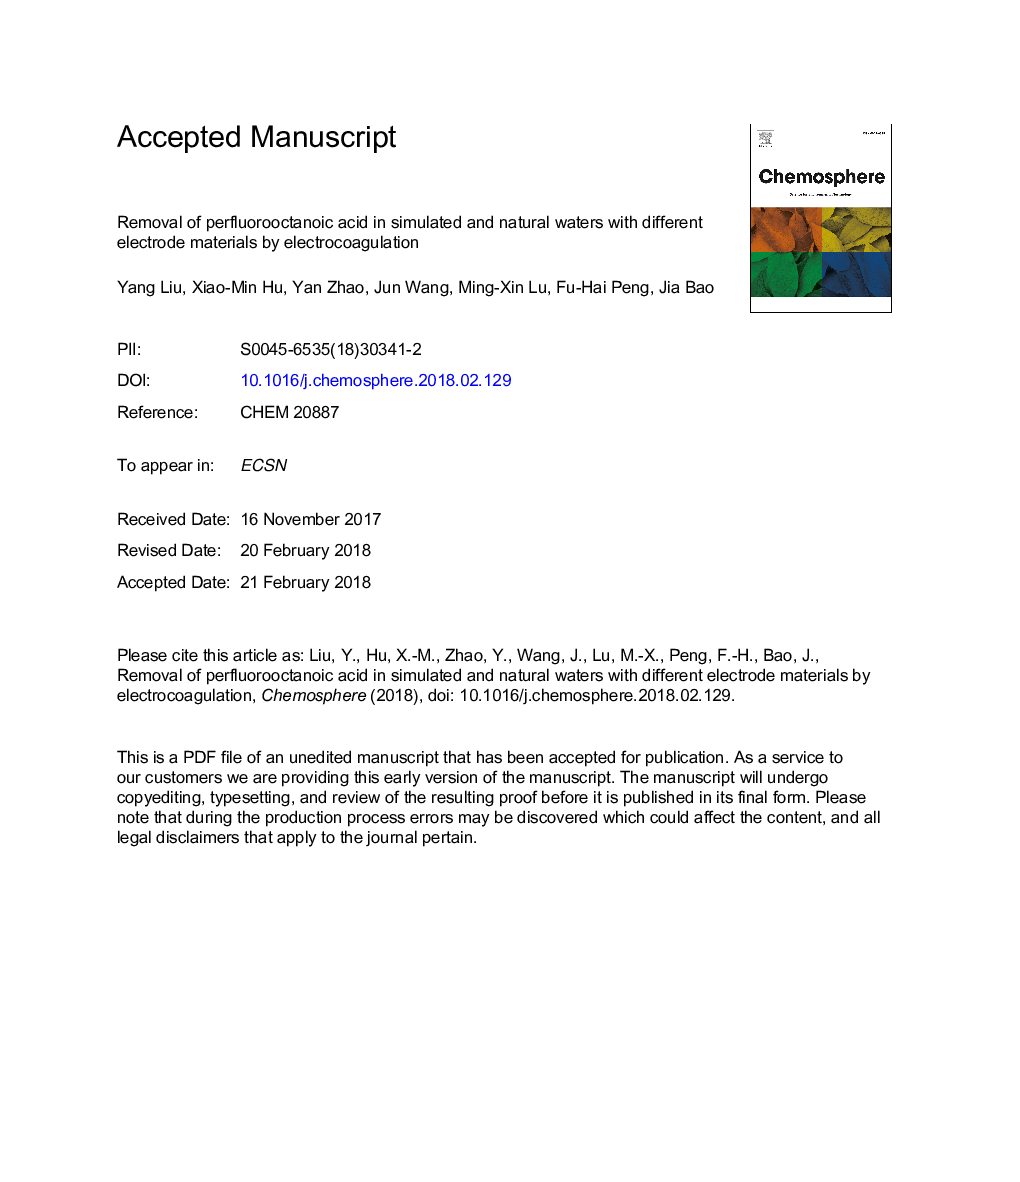 حذف پراکسلوروککتنیک اسید در آبهای شبیه سازی شده و طبیعی با مواد مختلف الکترود توسط الکتروکواگولاسیون 